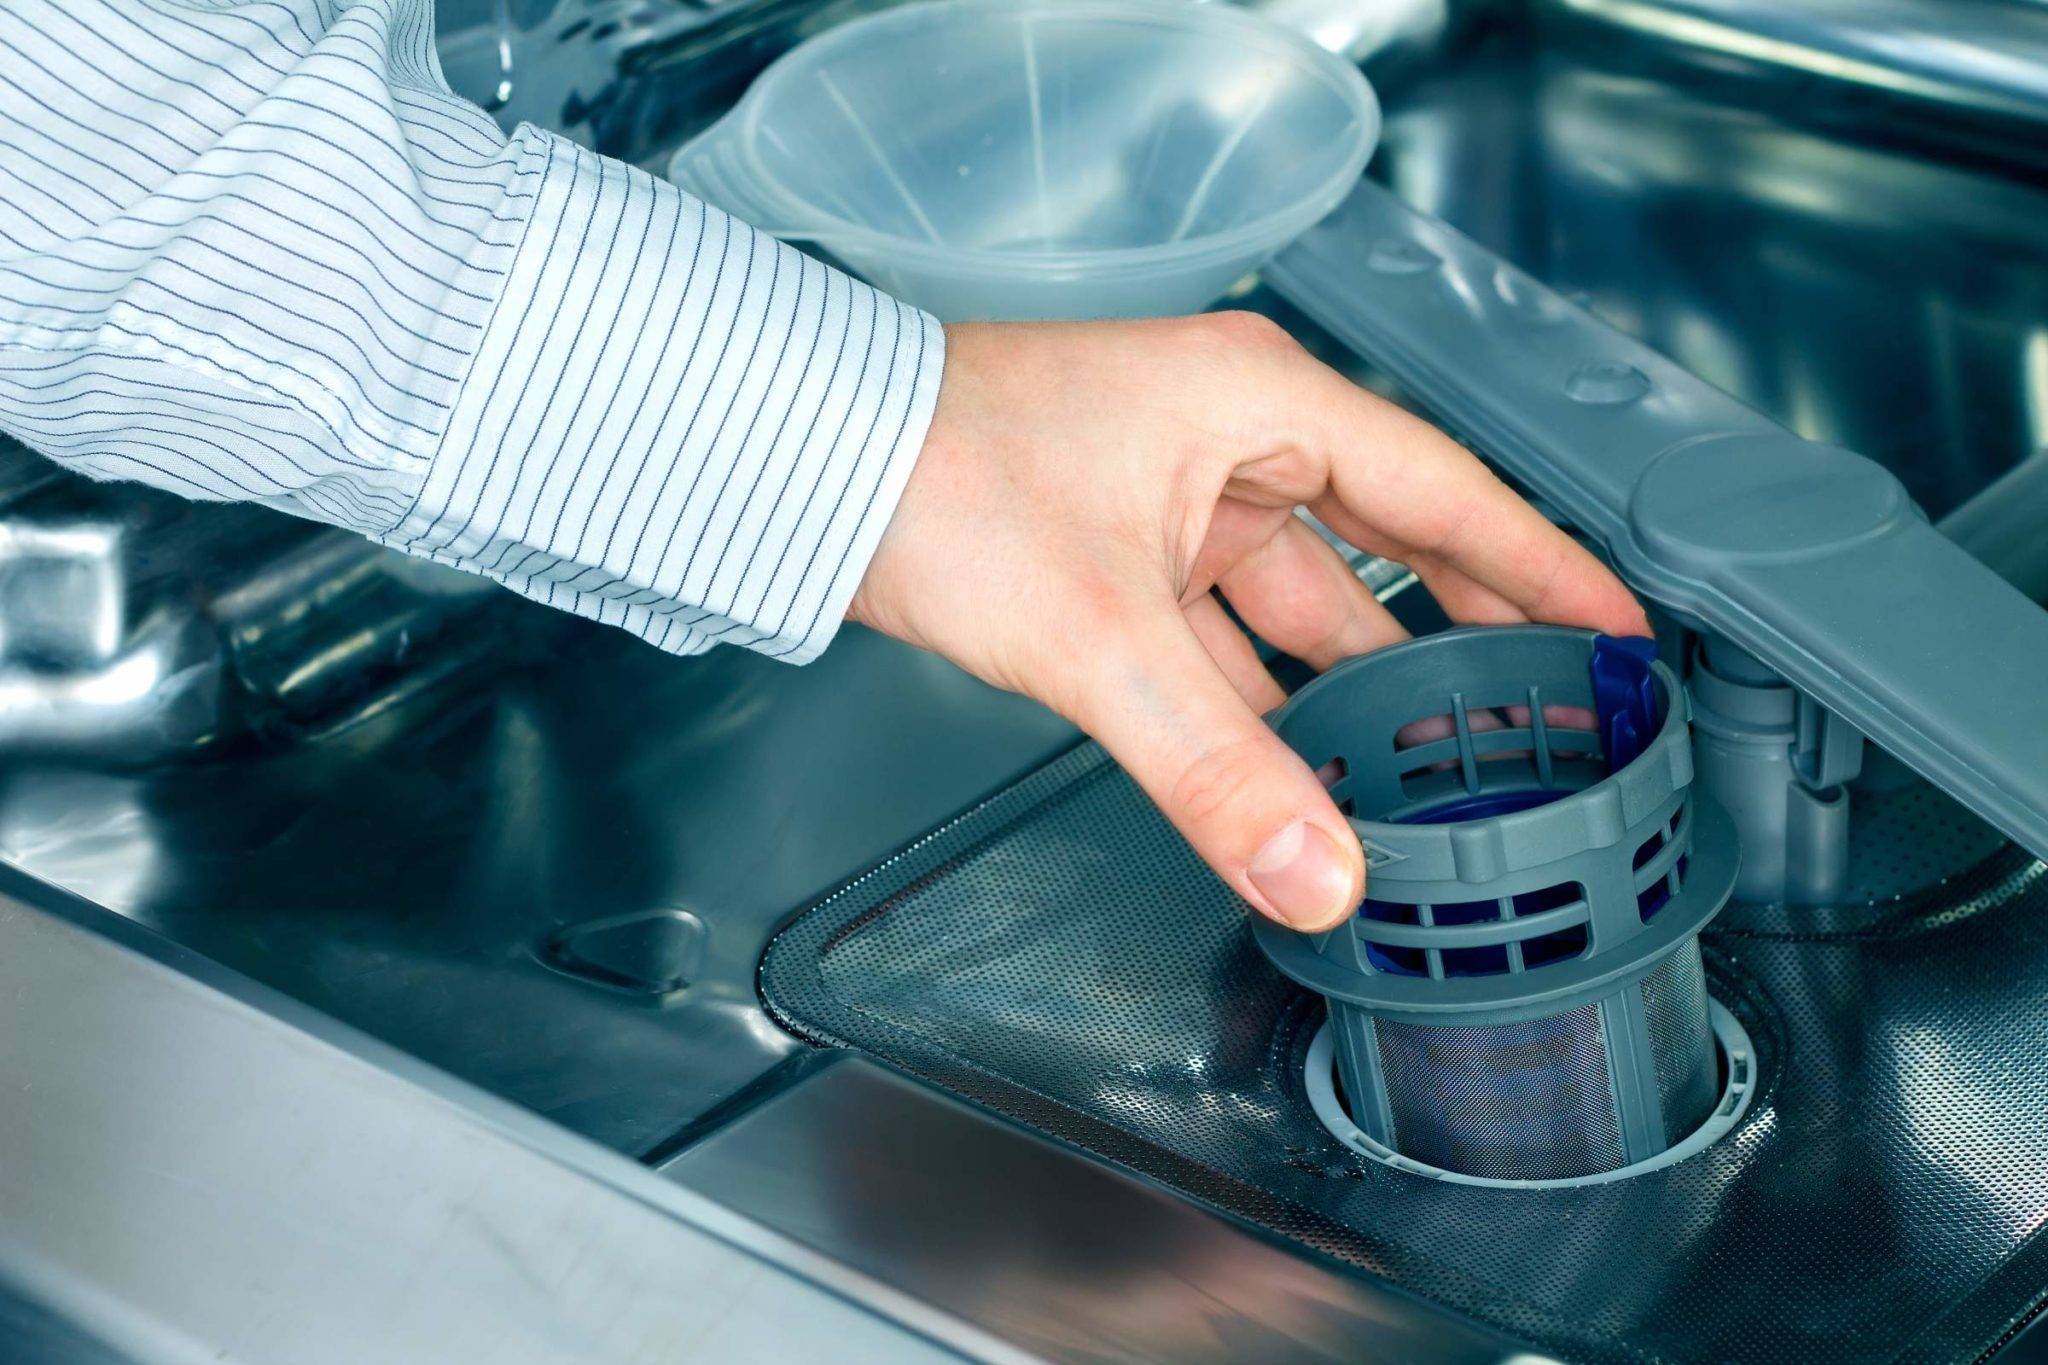 Как почистить посудомоечную машину? - xclean.info